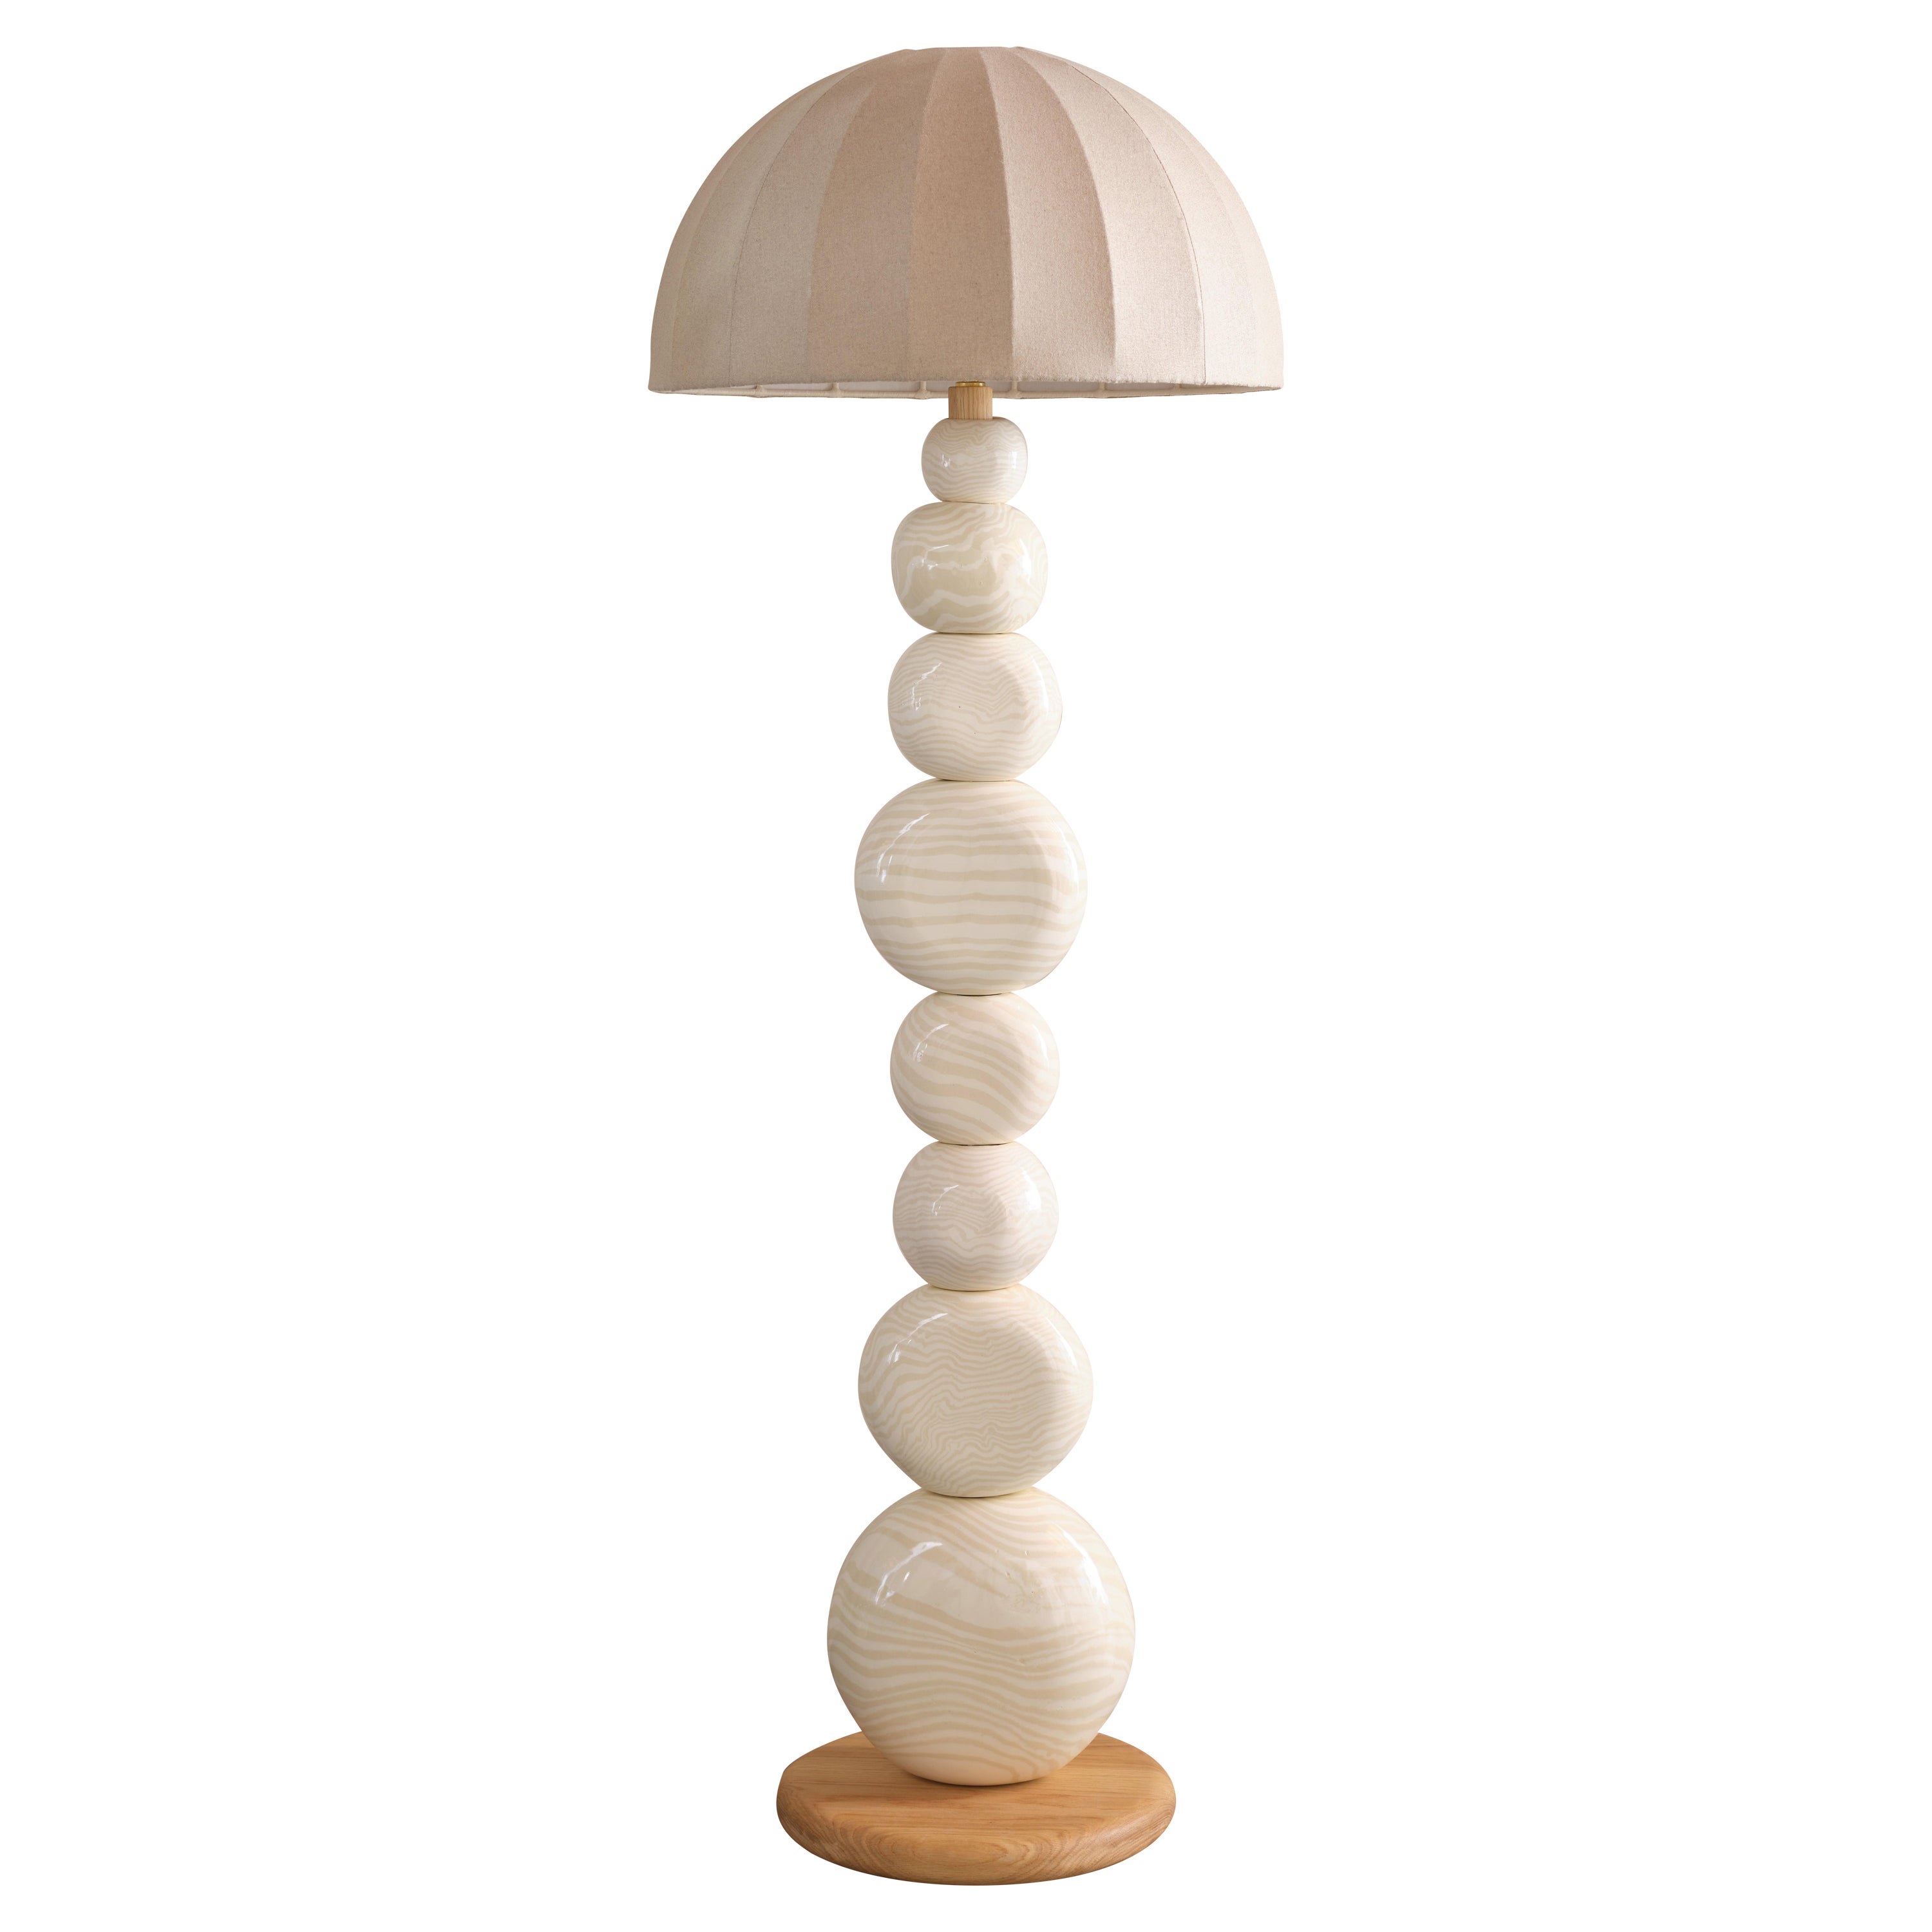 Henry Holland Studio Handmade Oatmeal and White Ceramic Sphere Floor Lamp For Sale